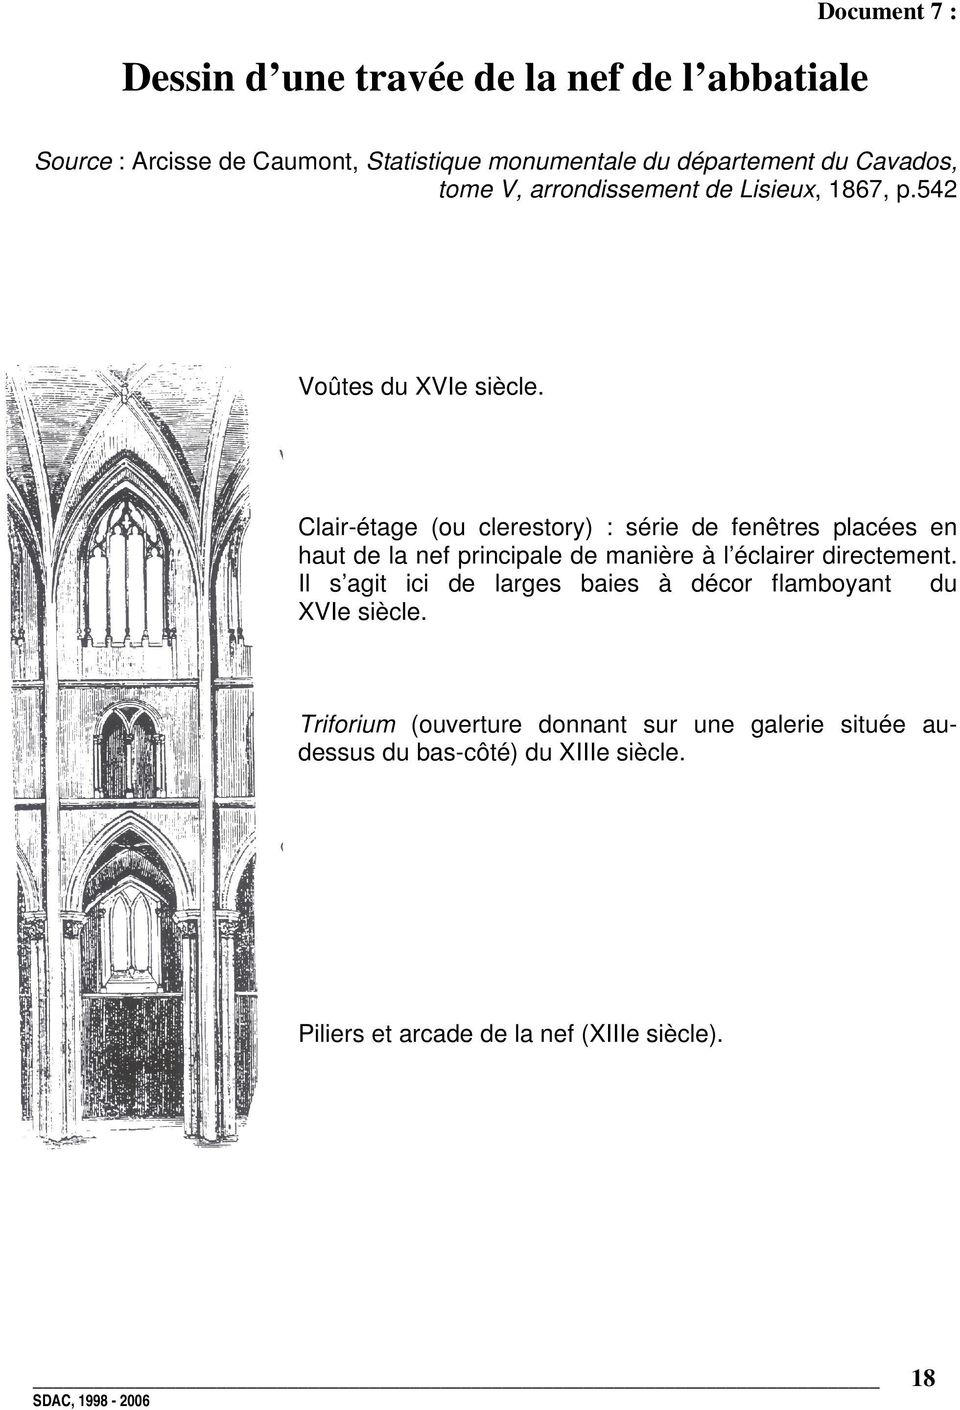 3 - Nef (XIIIe siècle). 4 - Tour lanterne (XIIIe siècle). 5 - Chœur (fin du XIIe siècle). 6 - Chapelle rayonnante (XIIIe siècle).